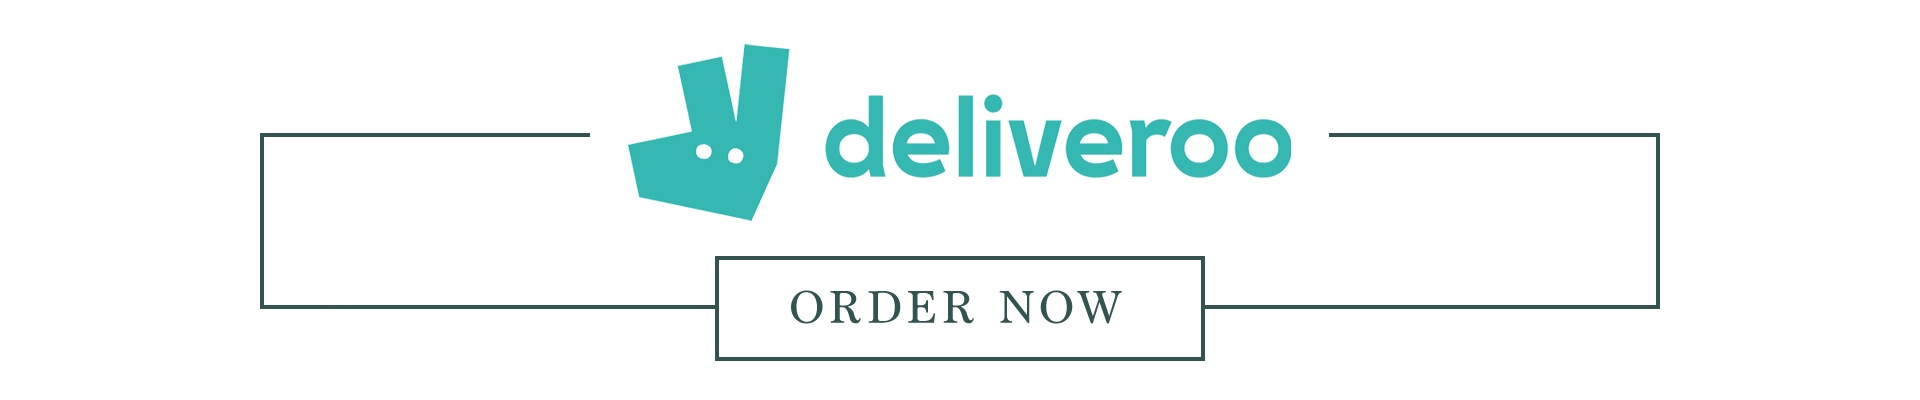 vv-deliveroo-deliverooubereats-thin-banner.png